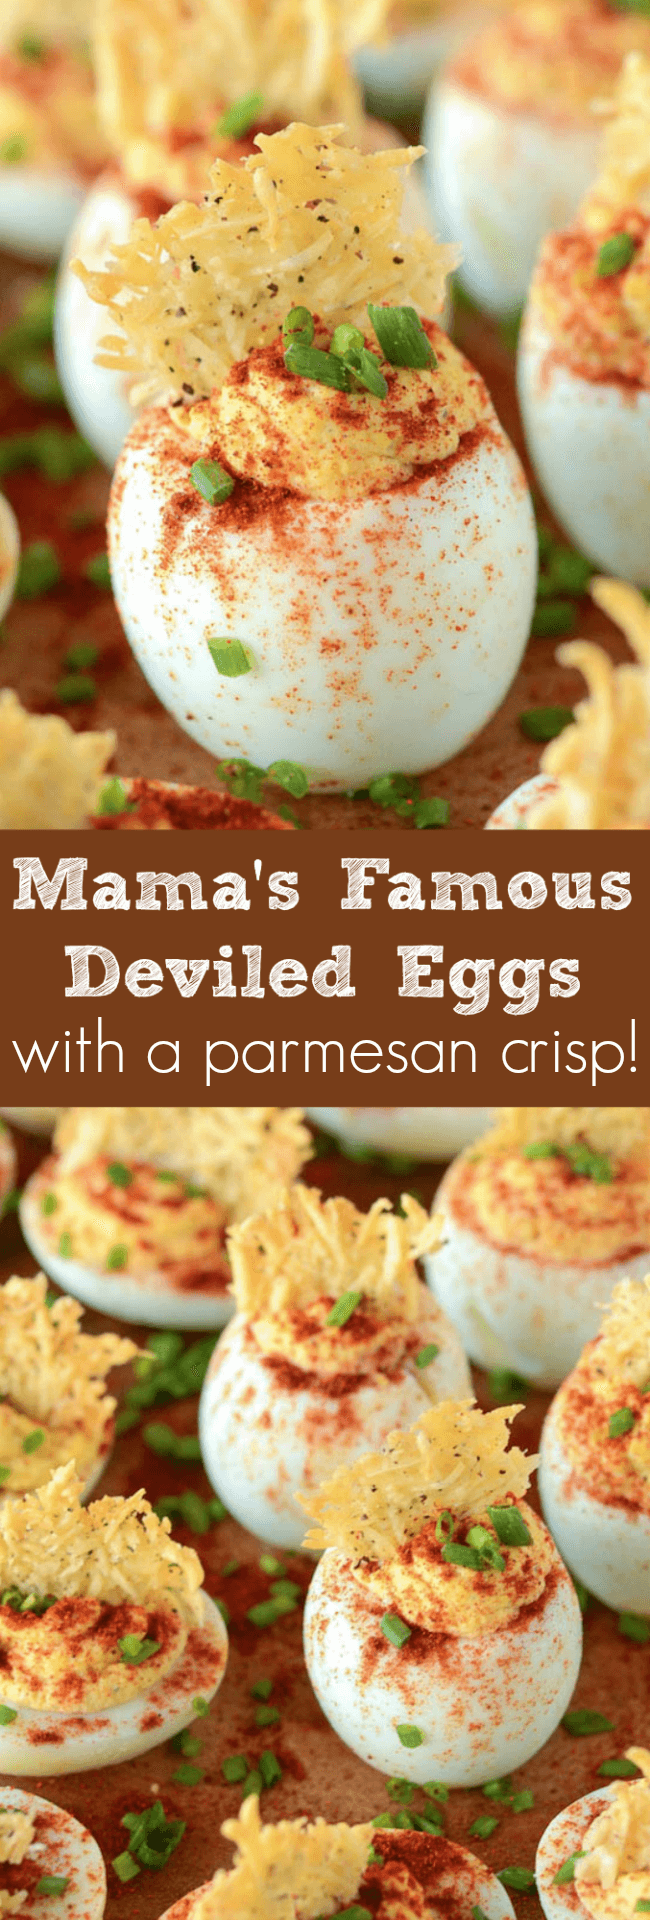 Deviled Eggs with a Parmesan Crisp photo collage